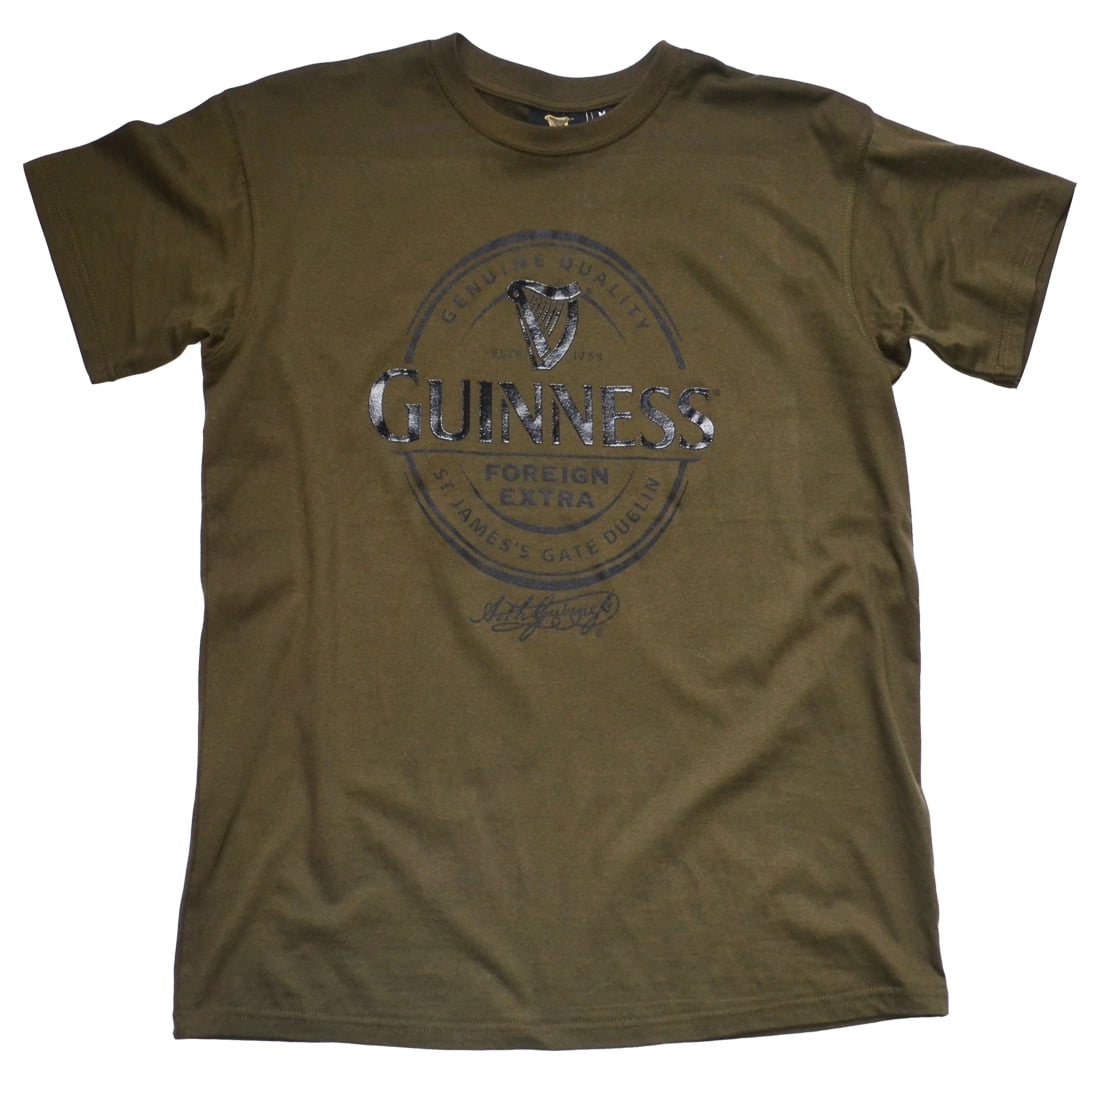 Guinness - Guinness T-Shirt for Men Short Sleeve Apparel Khaki Green ...